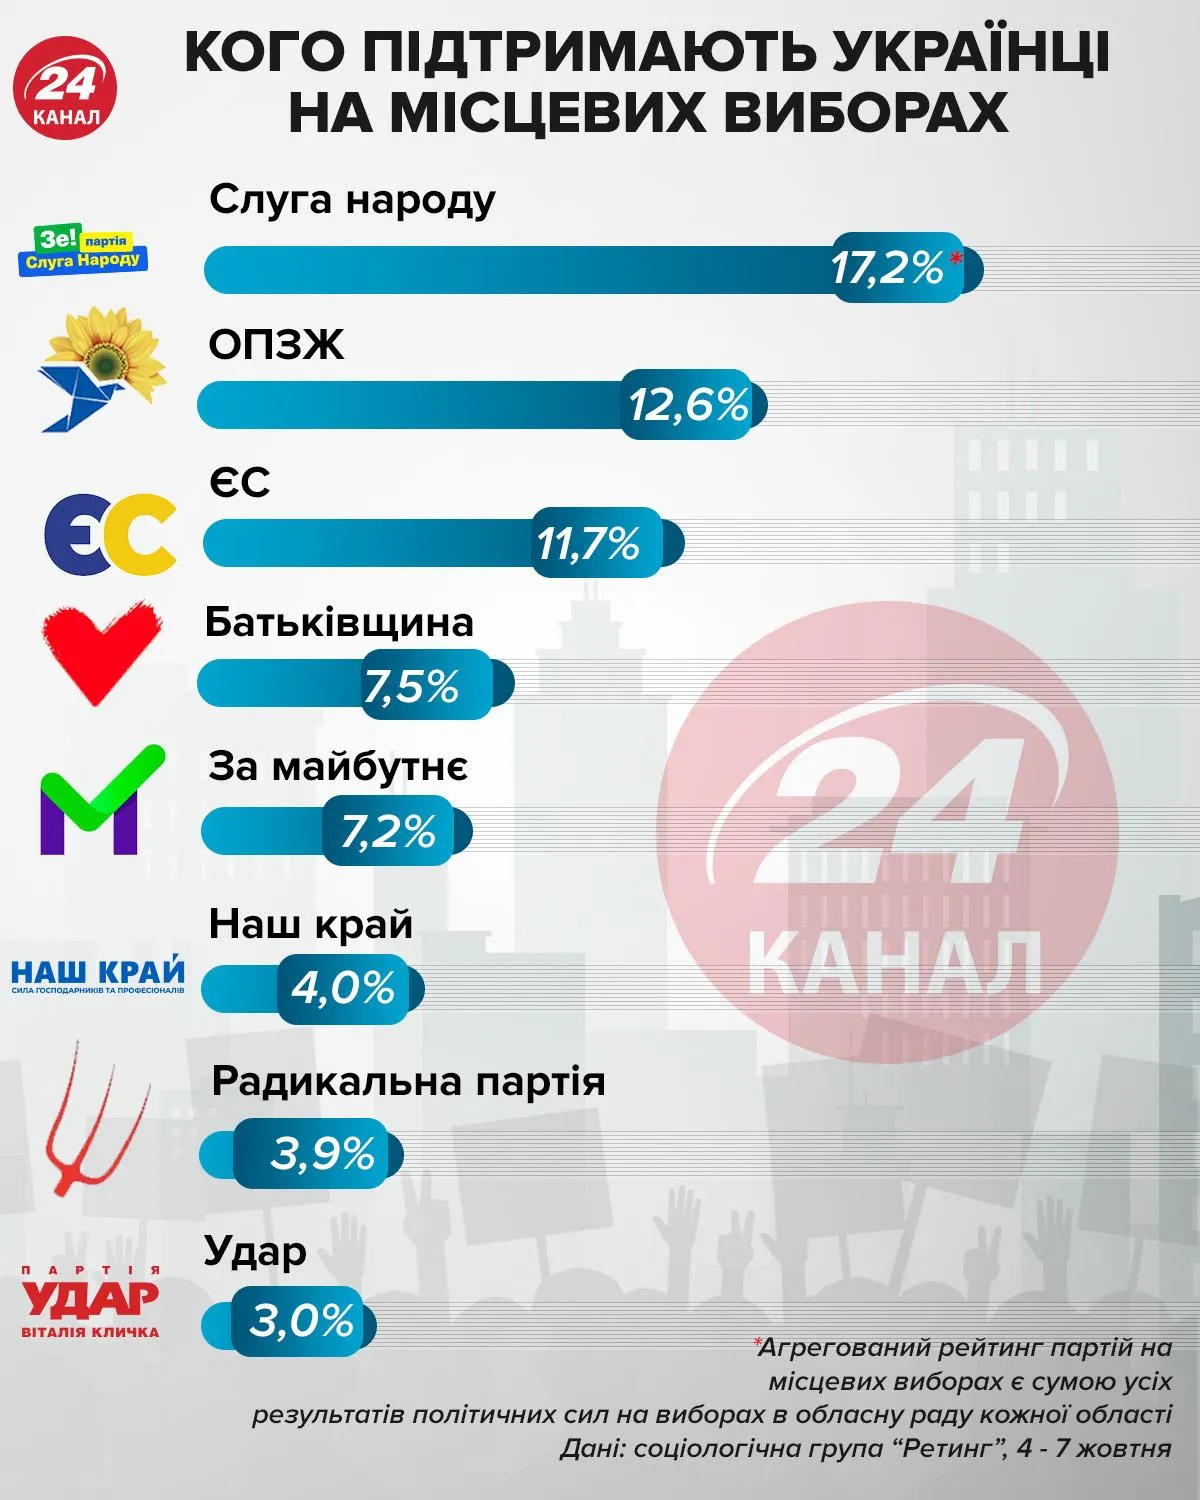 Поддержка партий на местных выборах инфографика 24 канал